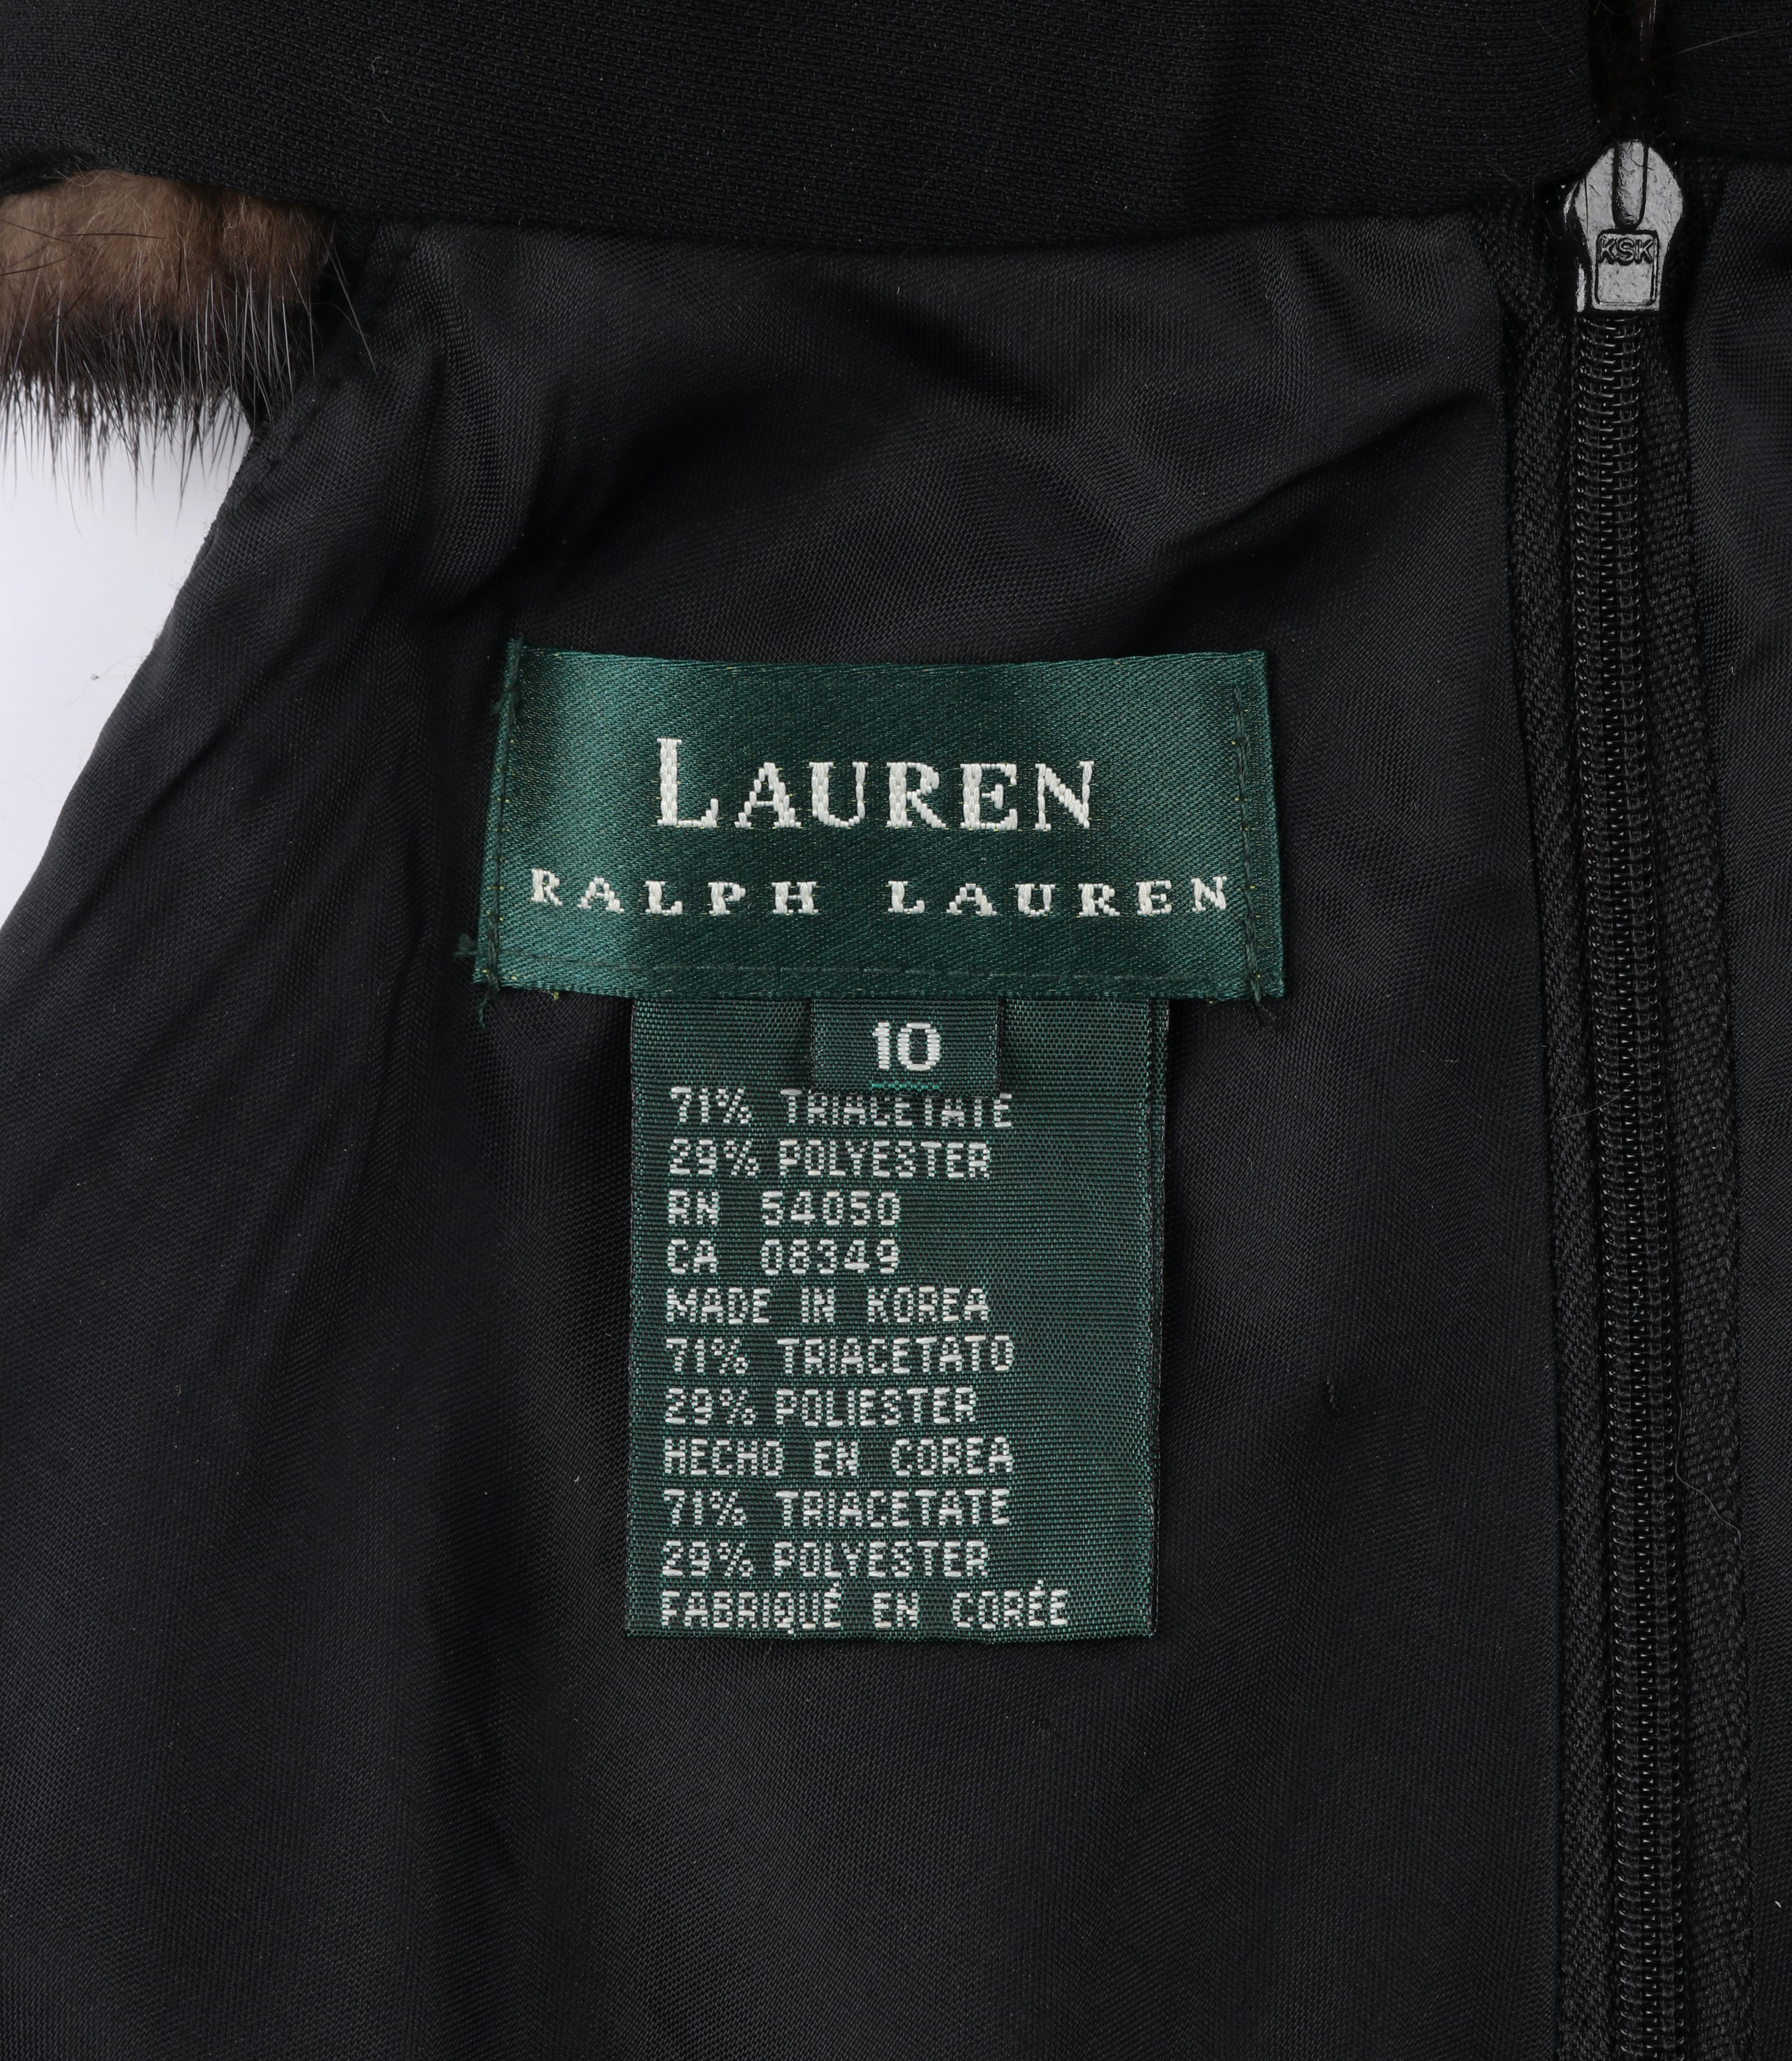 RALPH LAUREN Lauren Collection Black Mink Fur Collar Halter Evening Dress Gown 2